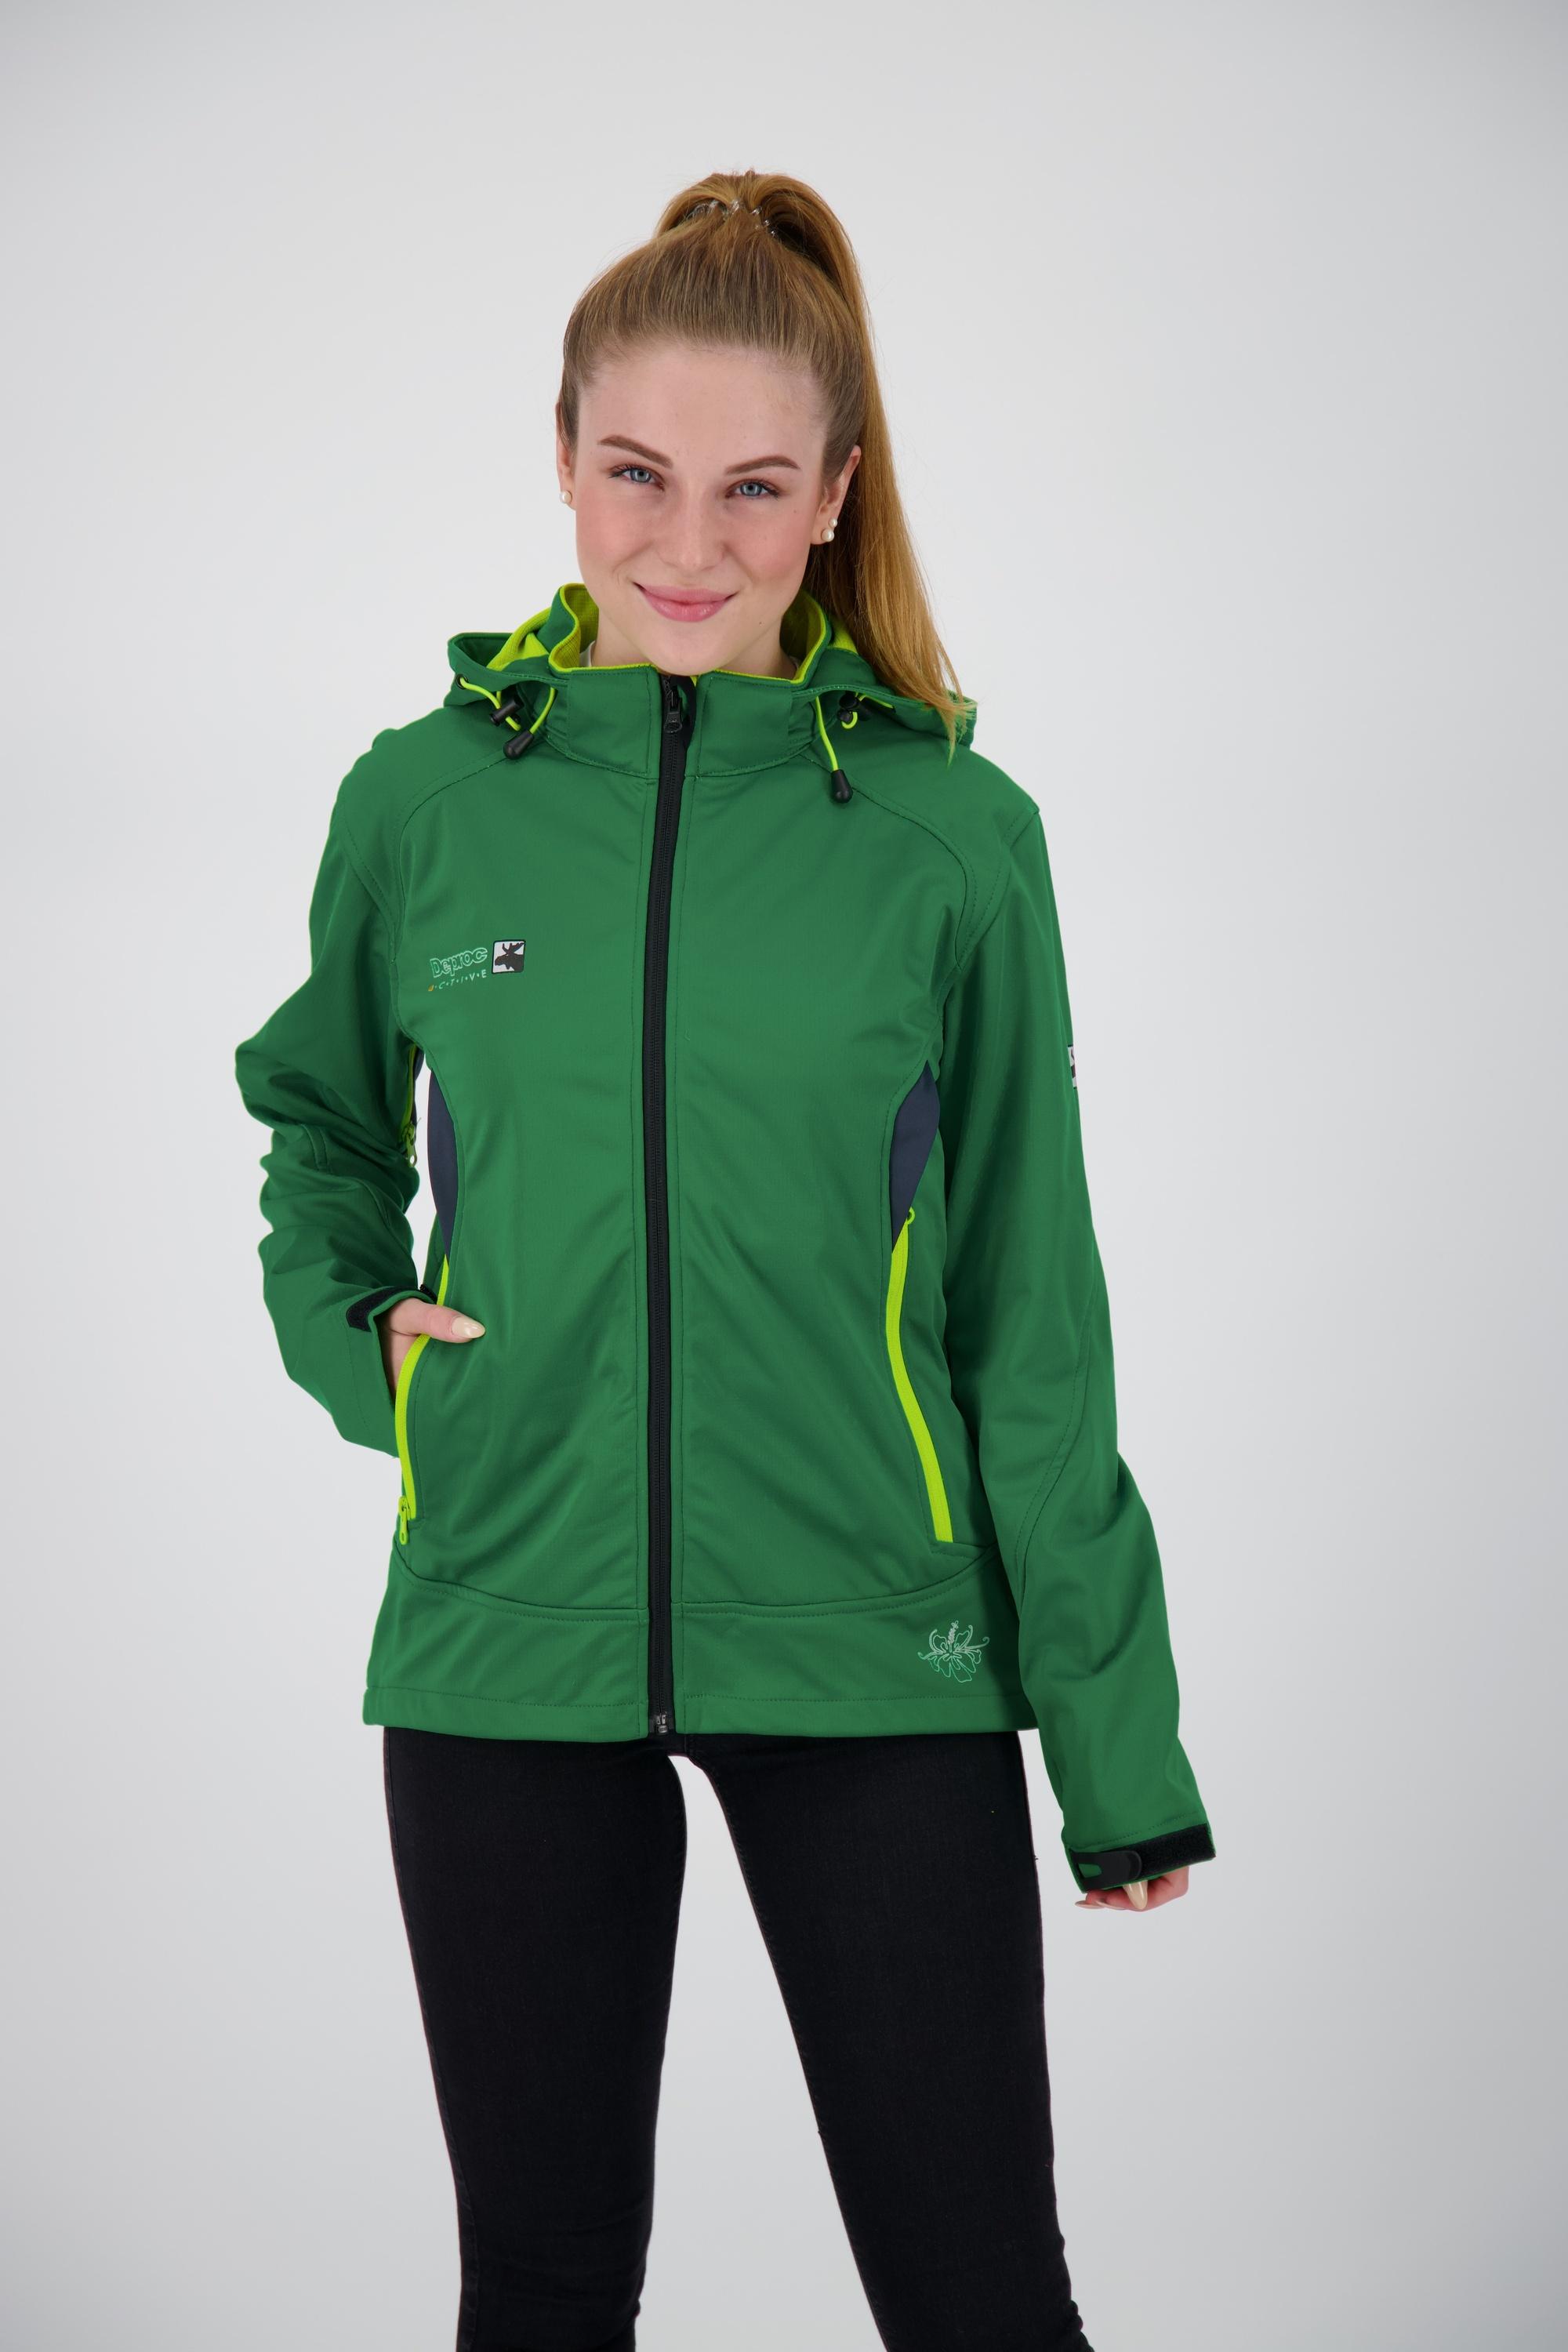 Damen Shop Online kaufen im Softshelljacke active SportScheck grün Downton von Peak WOMEN DEPROC